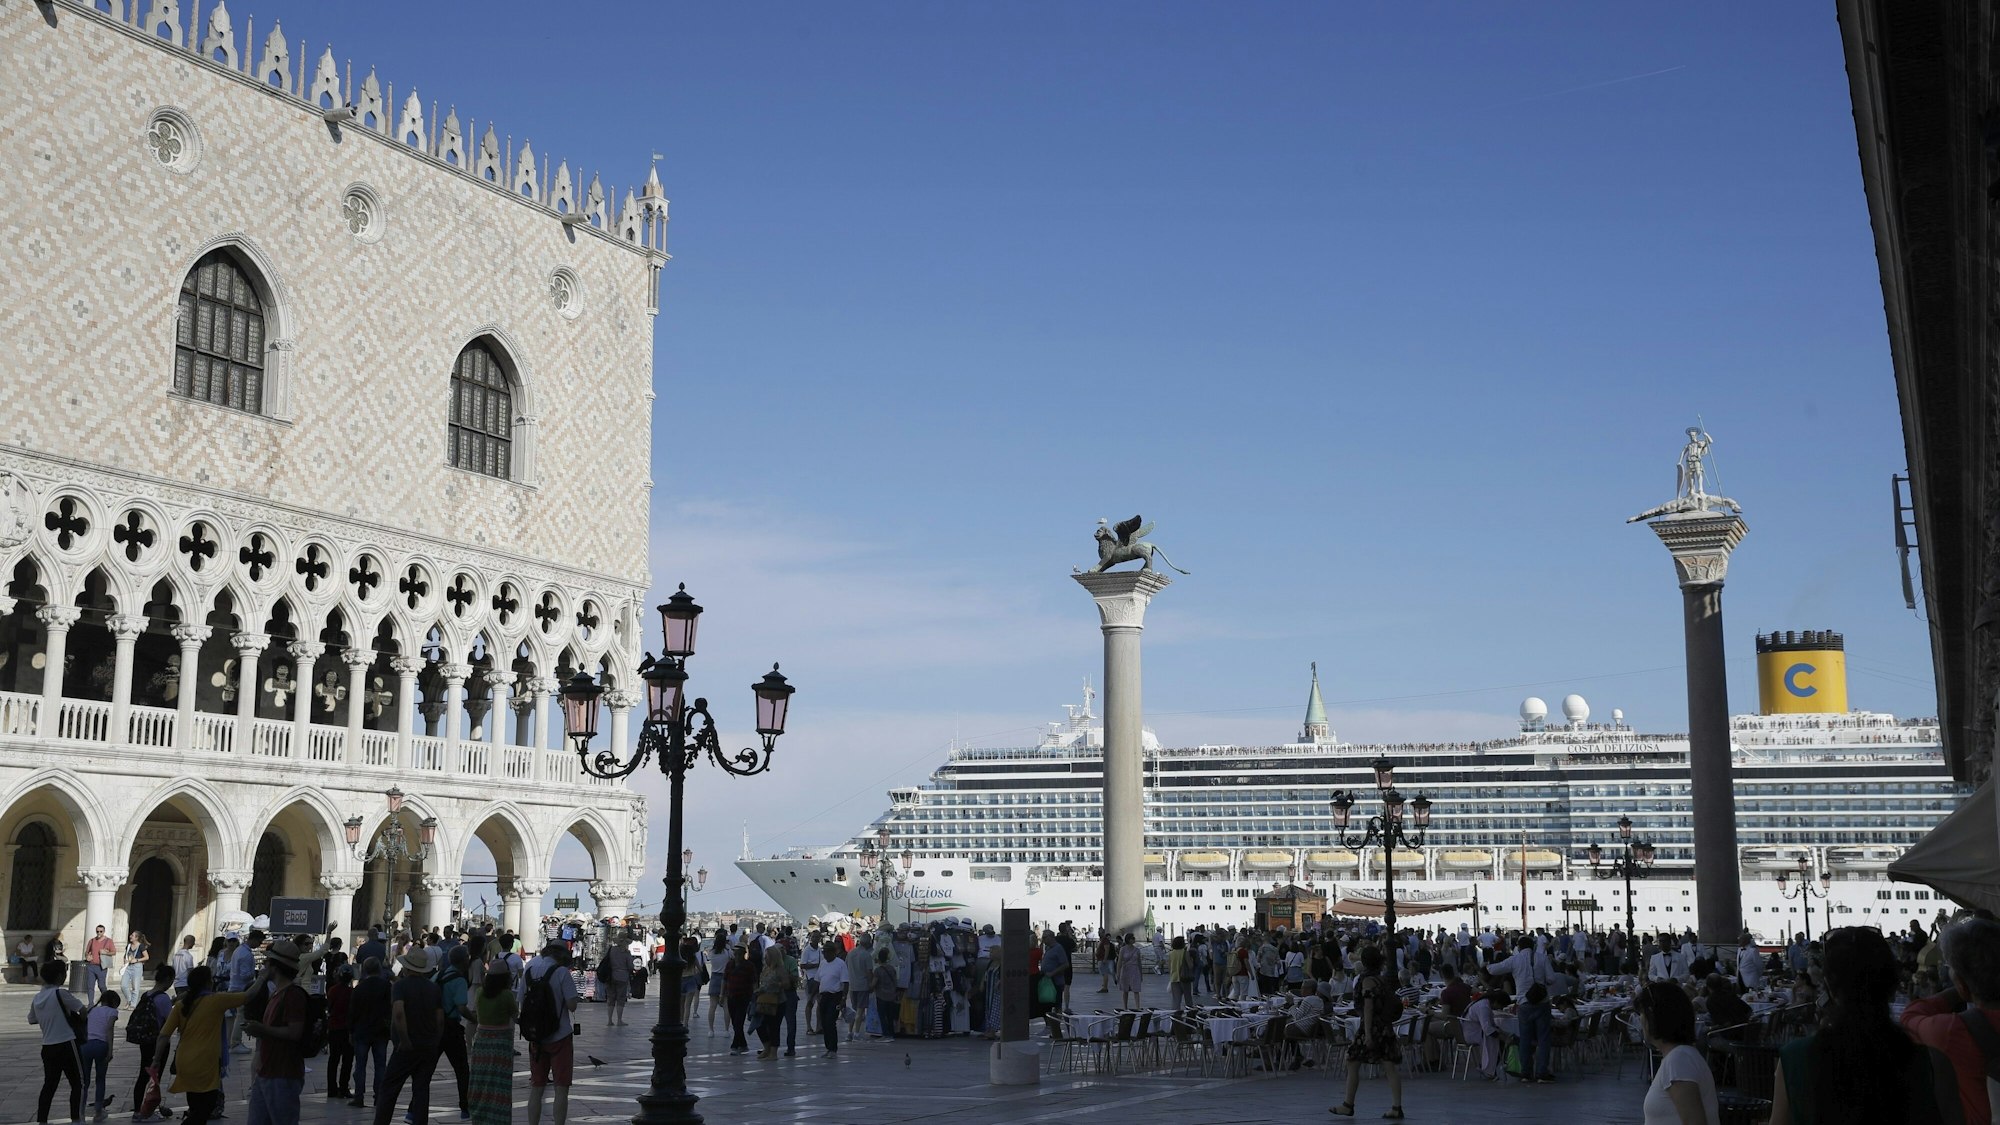 Ein Kreuzfahrtschiff fährt im Sommer 2019 am Markusplatz in Venedig vorbei, auf dem Platz stehen zahlreiche Menschen, die Sonne scheint. Italiens Regierung hat ein Durchfahrtsverbot für große Kreuzfahrtschiffe durch einen Teil der Lagune von Venedig beschlossen.